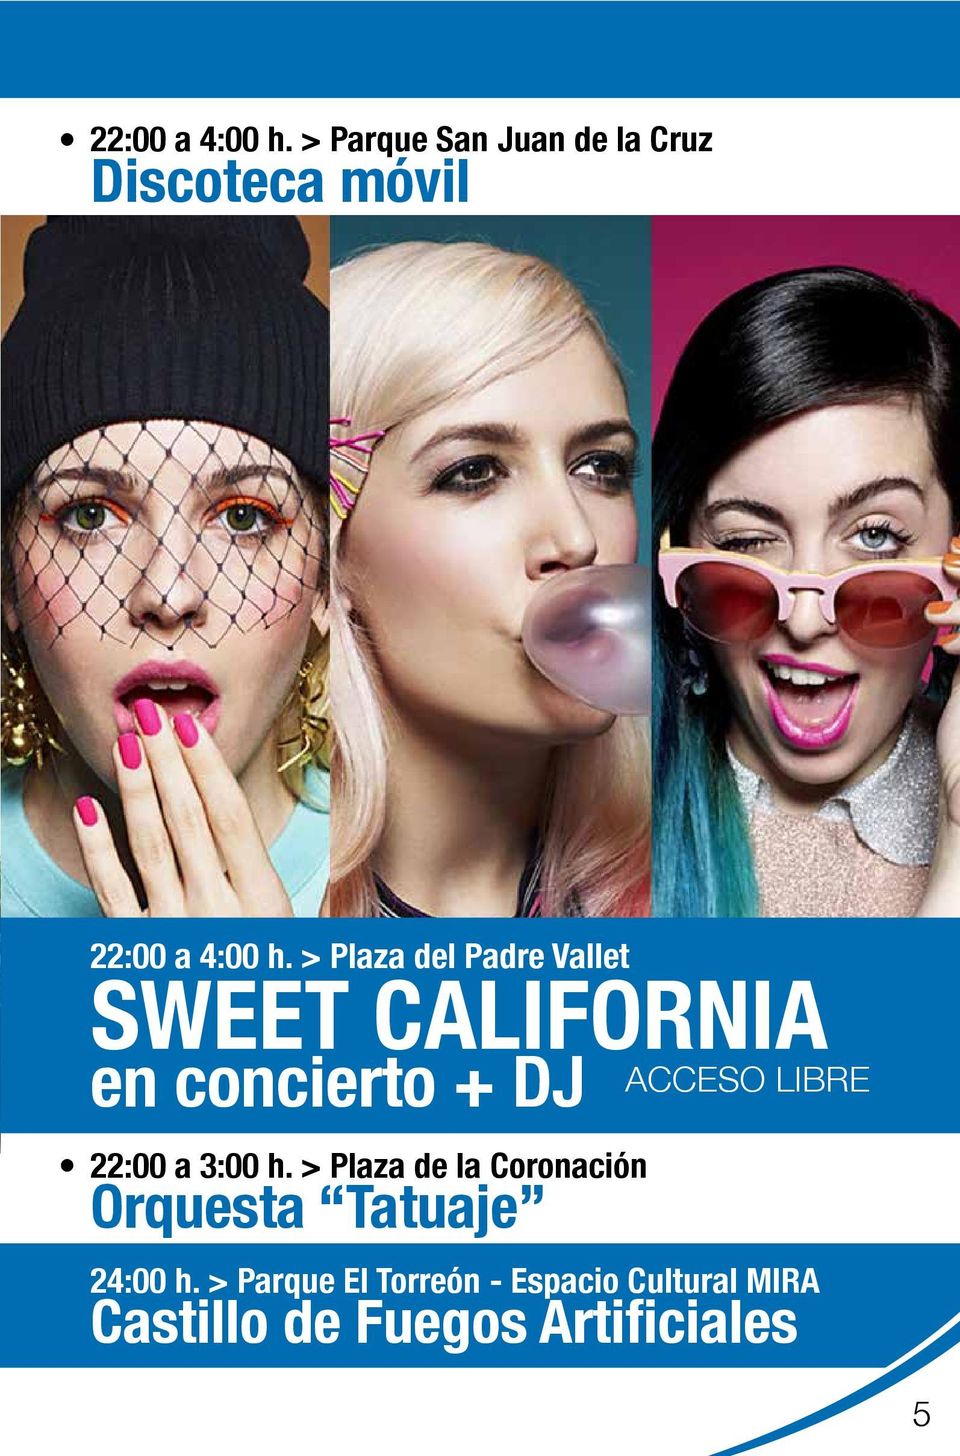 SWEET CALIFORNIA en concierto + DJ 22:00 a 3:00 h.